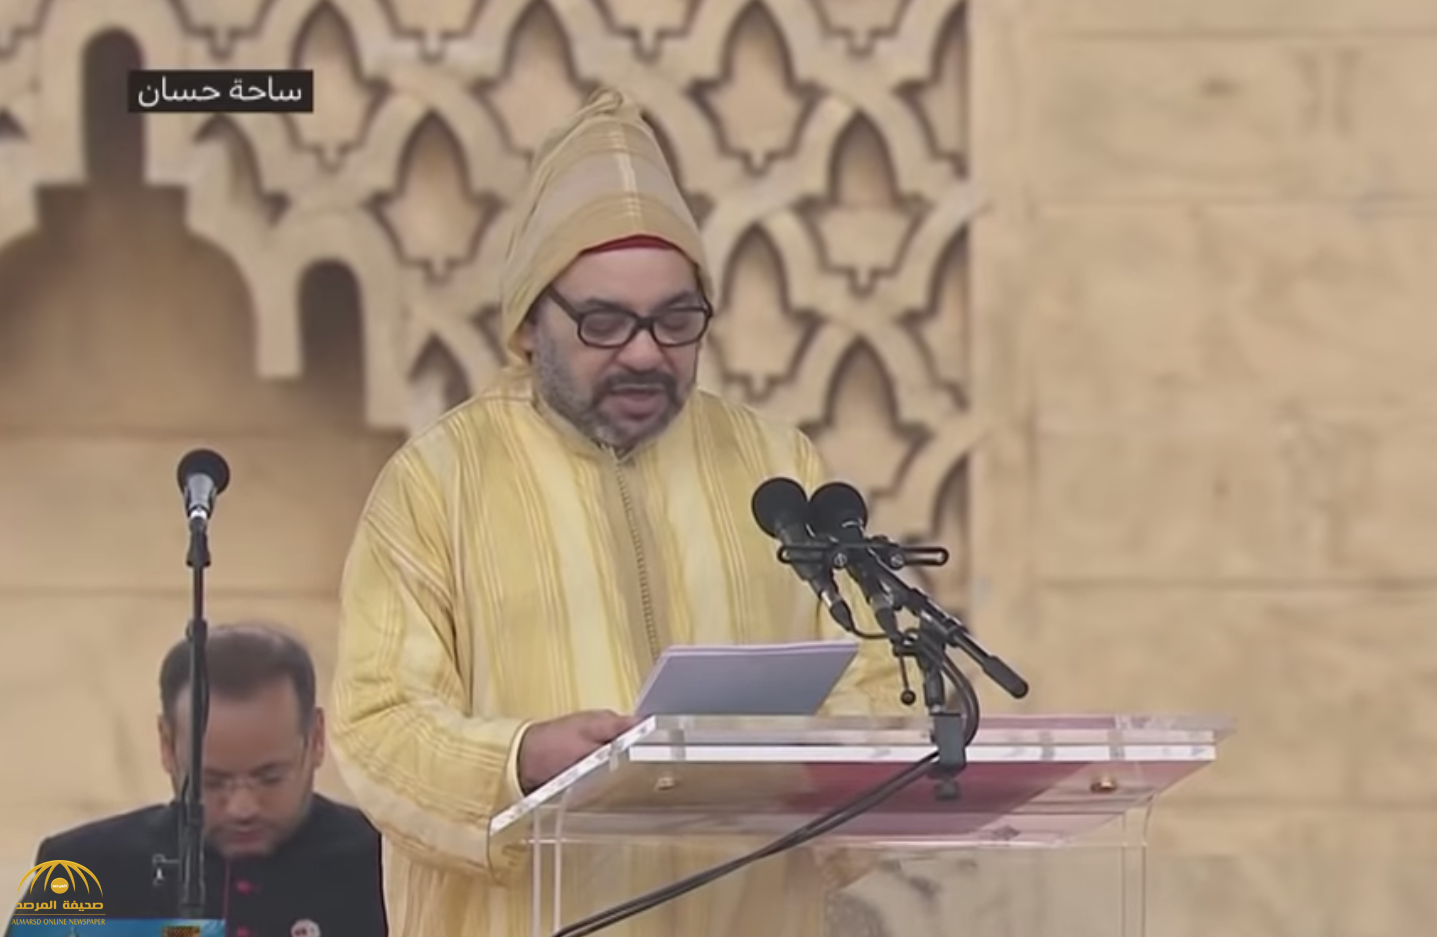 شاهد : العاهل المغربي يبهر "بابا الفاتيكان" أثناء إلقاء كلمته بأربع لغات!